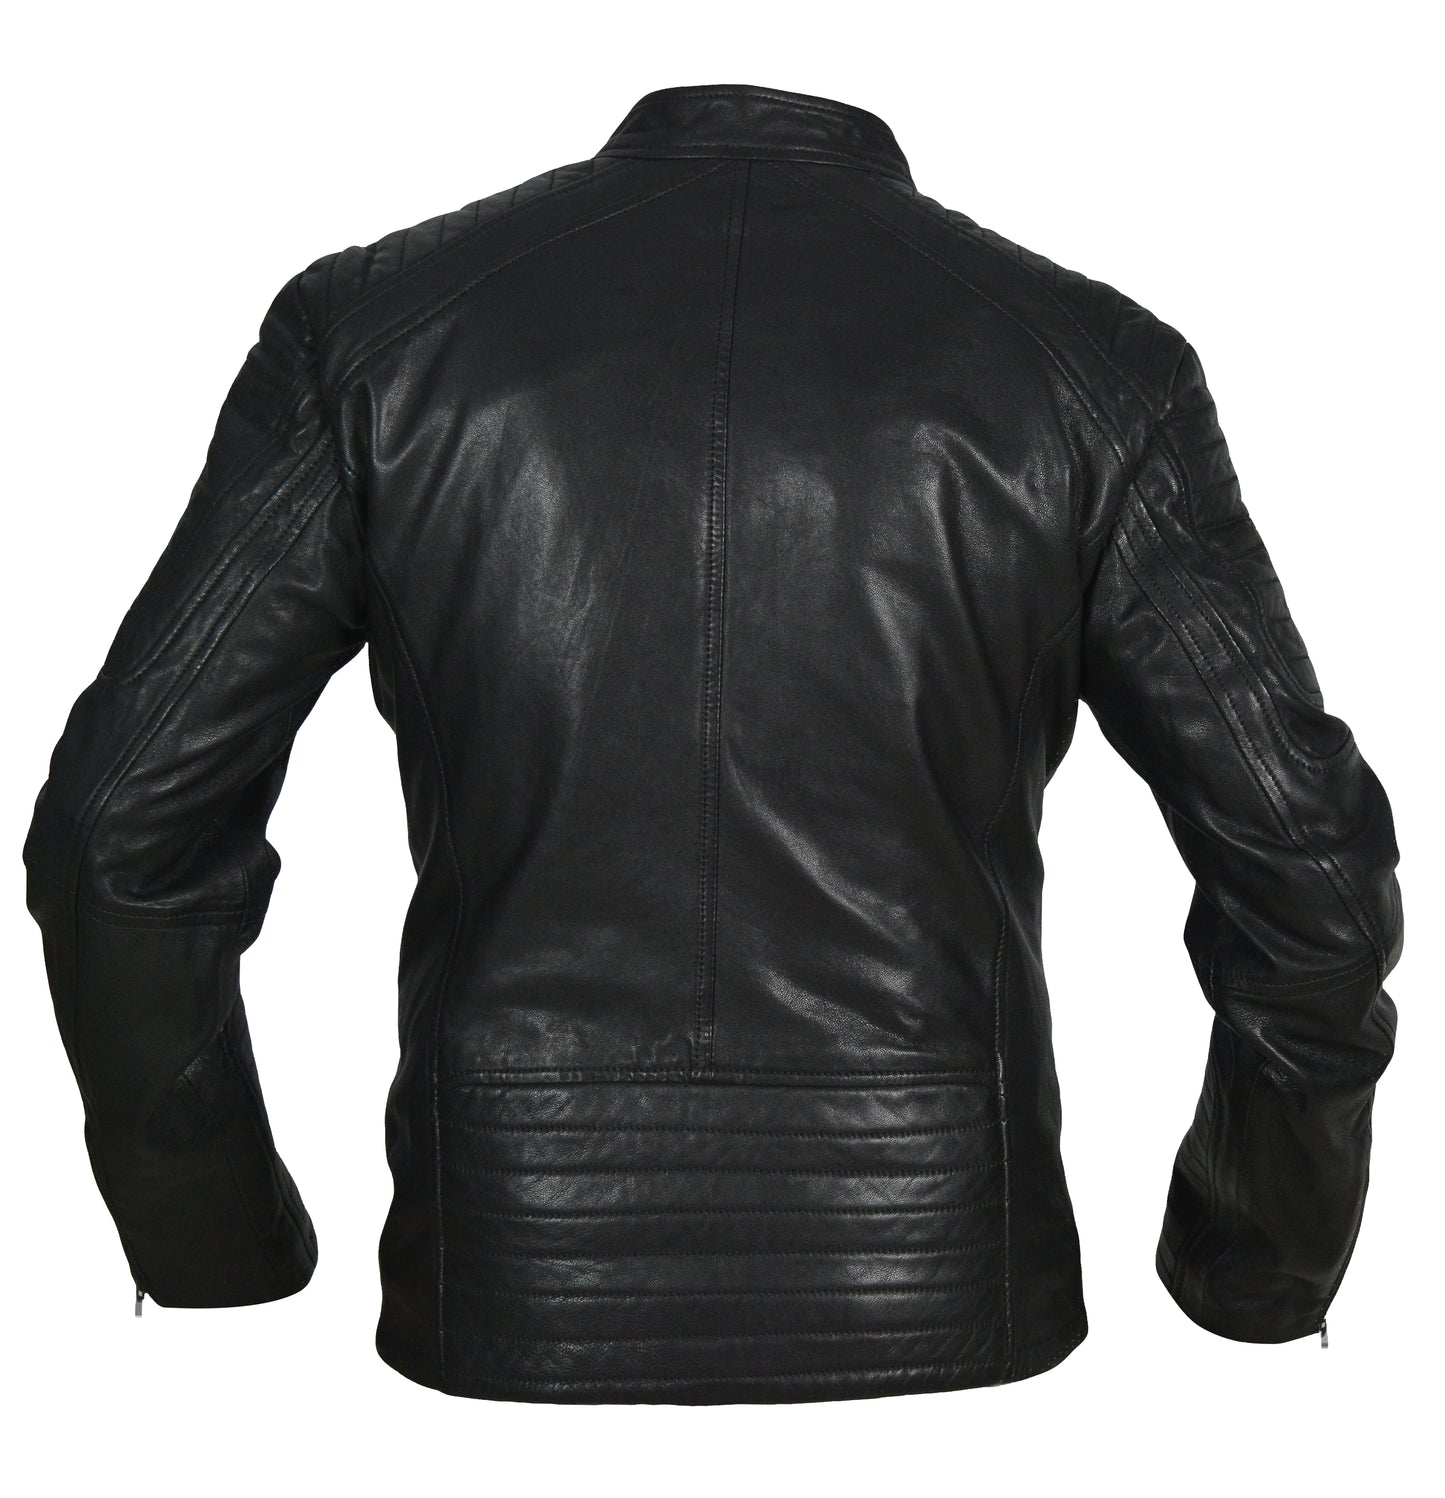 Pelle Pelle Men's Black Piped Sleeve Motorcycle Jacket